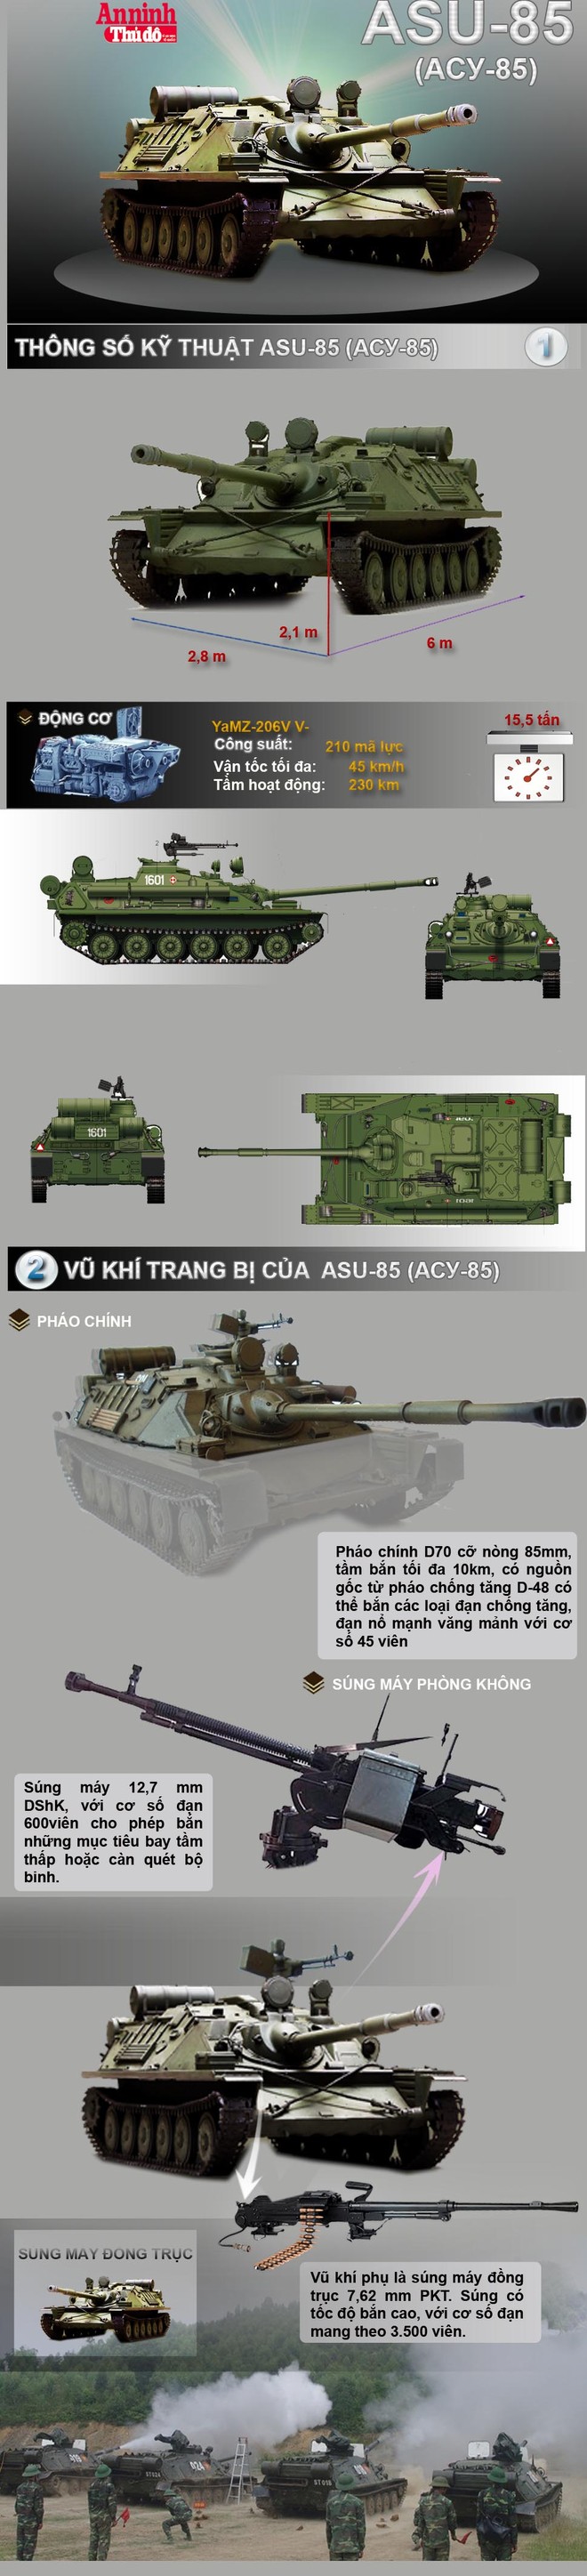 [Infographic] ASU-85 (АСУ-85) - Pháo đổ bộ đường không nổi tiếng một thời của Nga ảnh 1